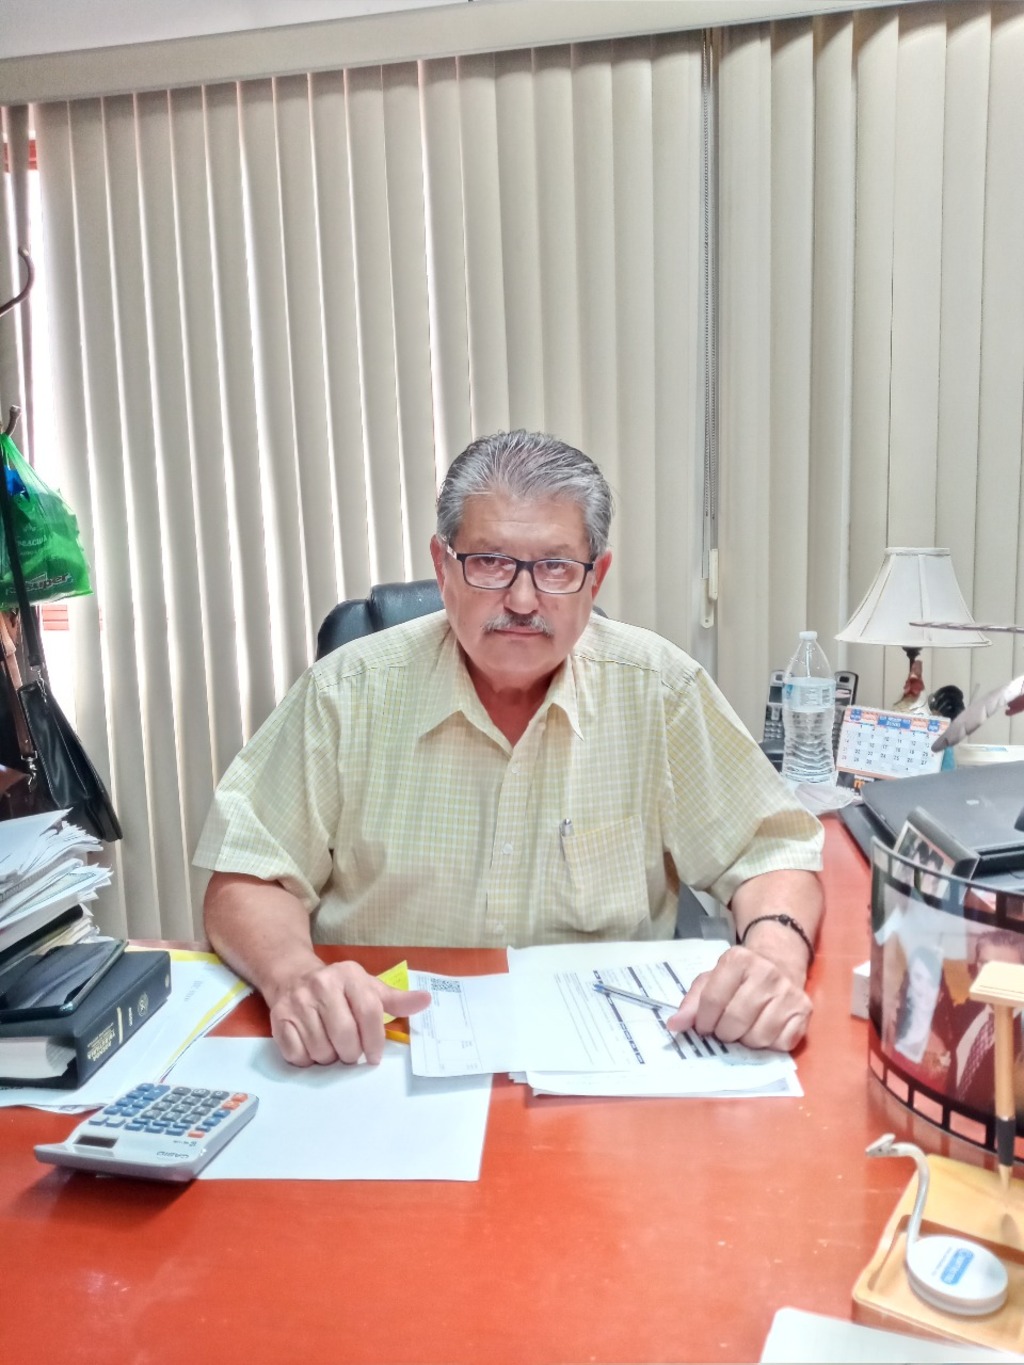 El vicepresidente de la Asociación de Contadores Públicos de La Laguna, Rubén González, consideró que gran parte del conflicto está en los jóvenes empresarios que no tienen cultura contributiva.